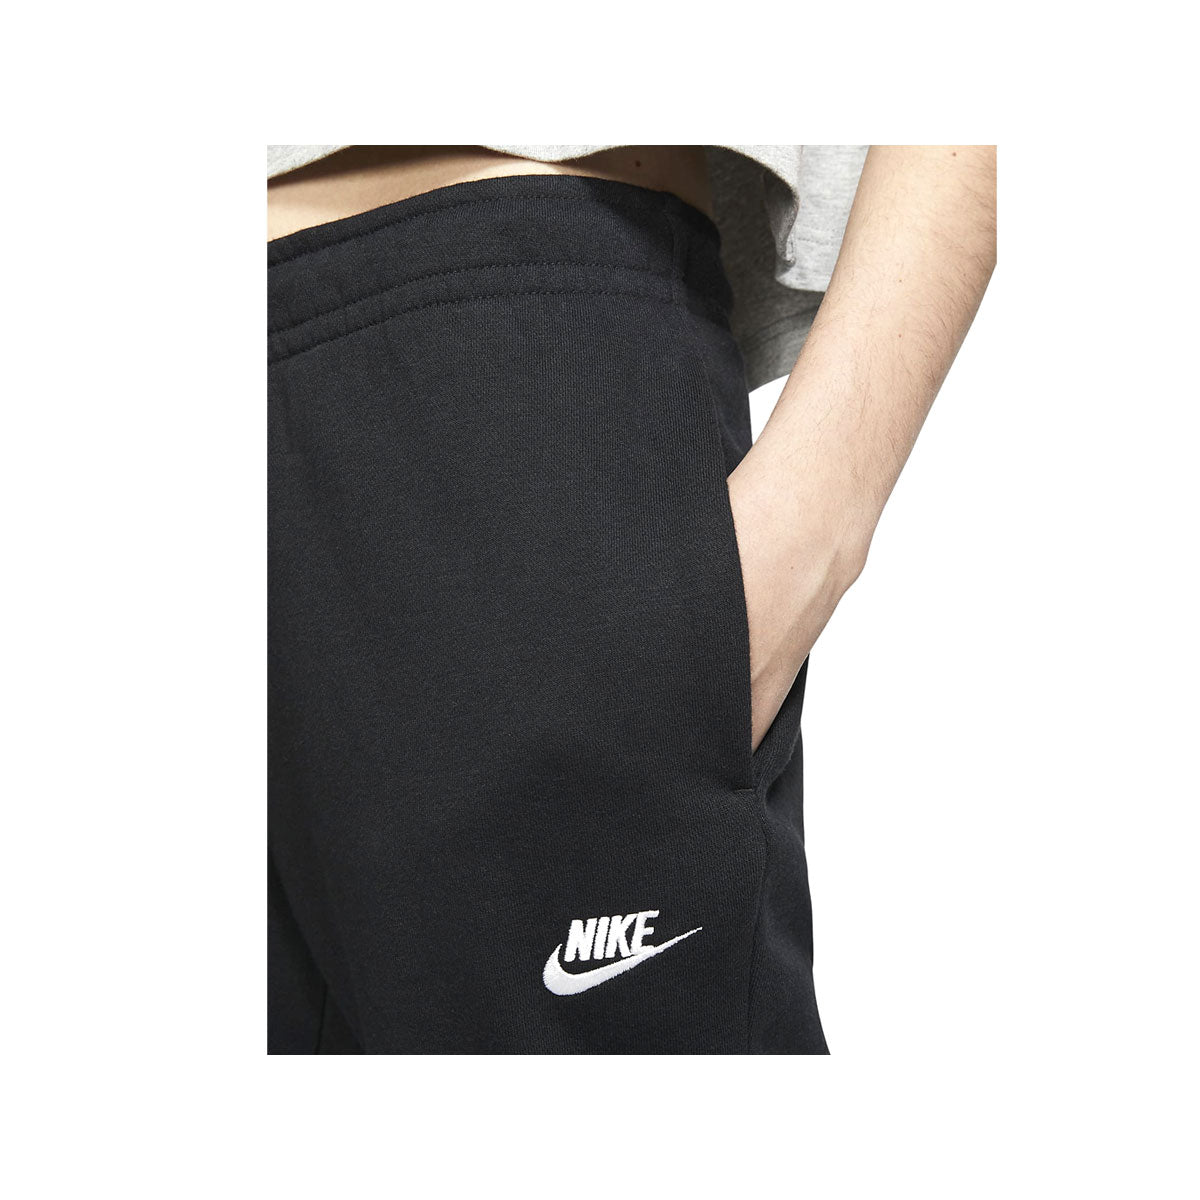 Nike Women's Sportswear Essential Fleece Pants - KickzStore